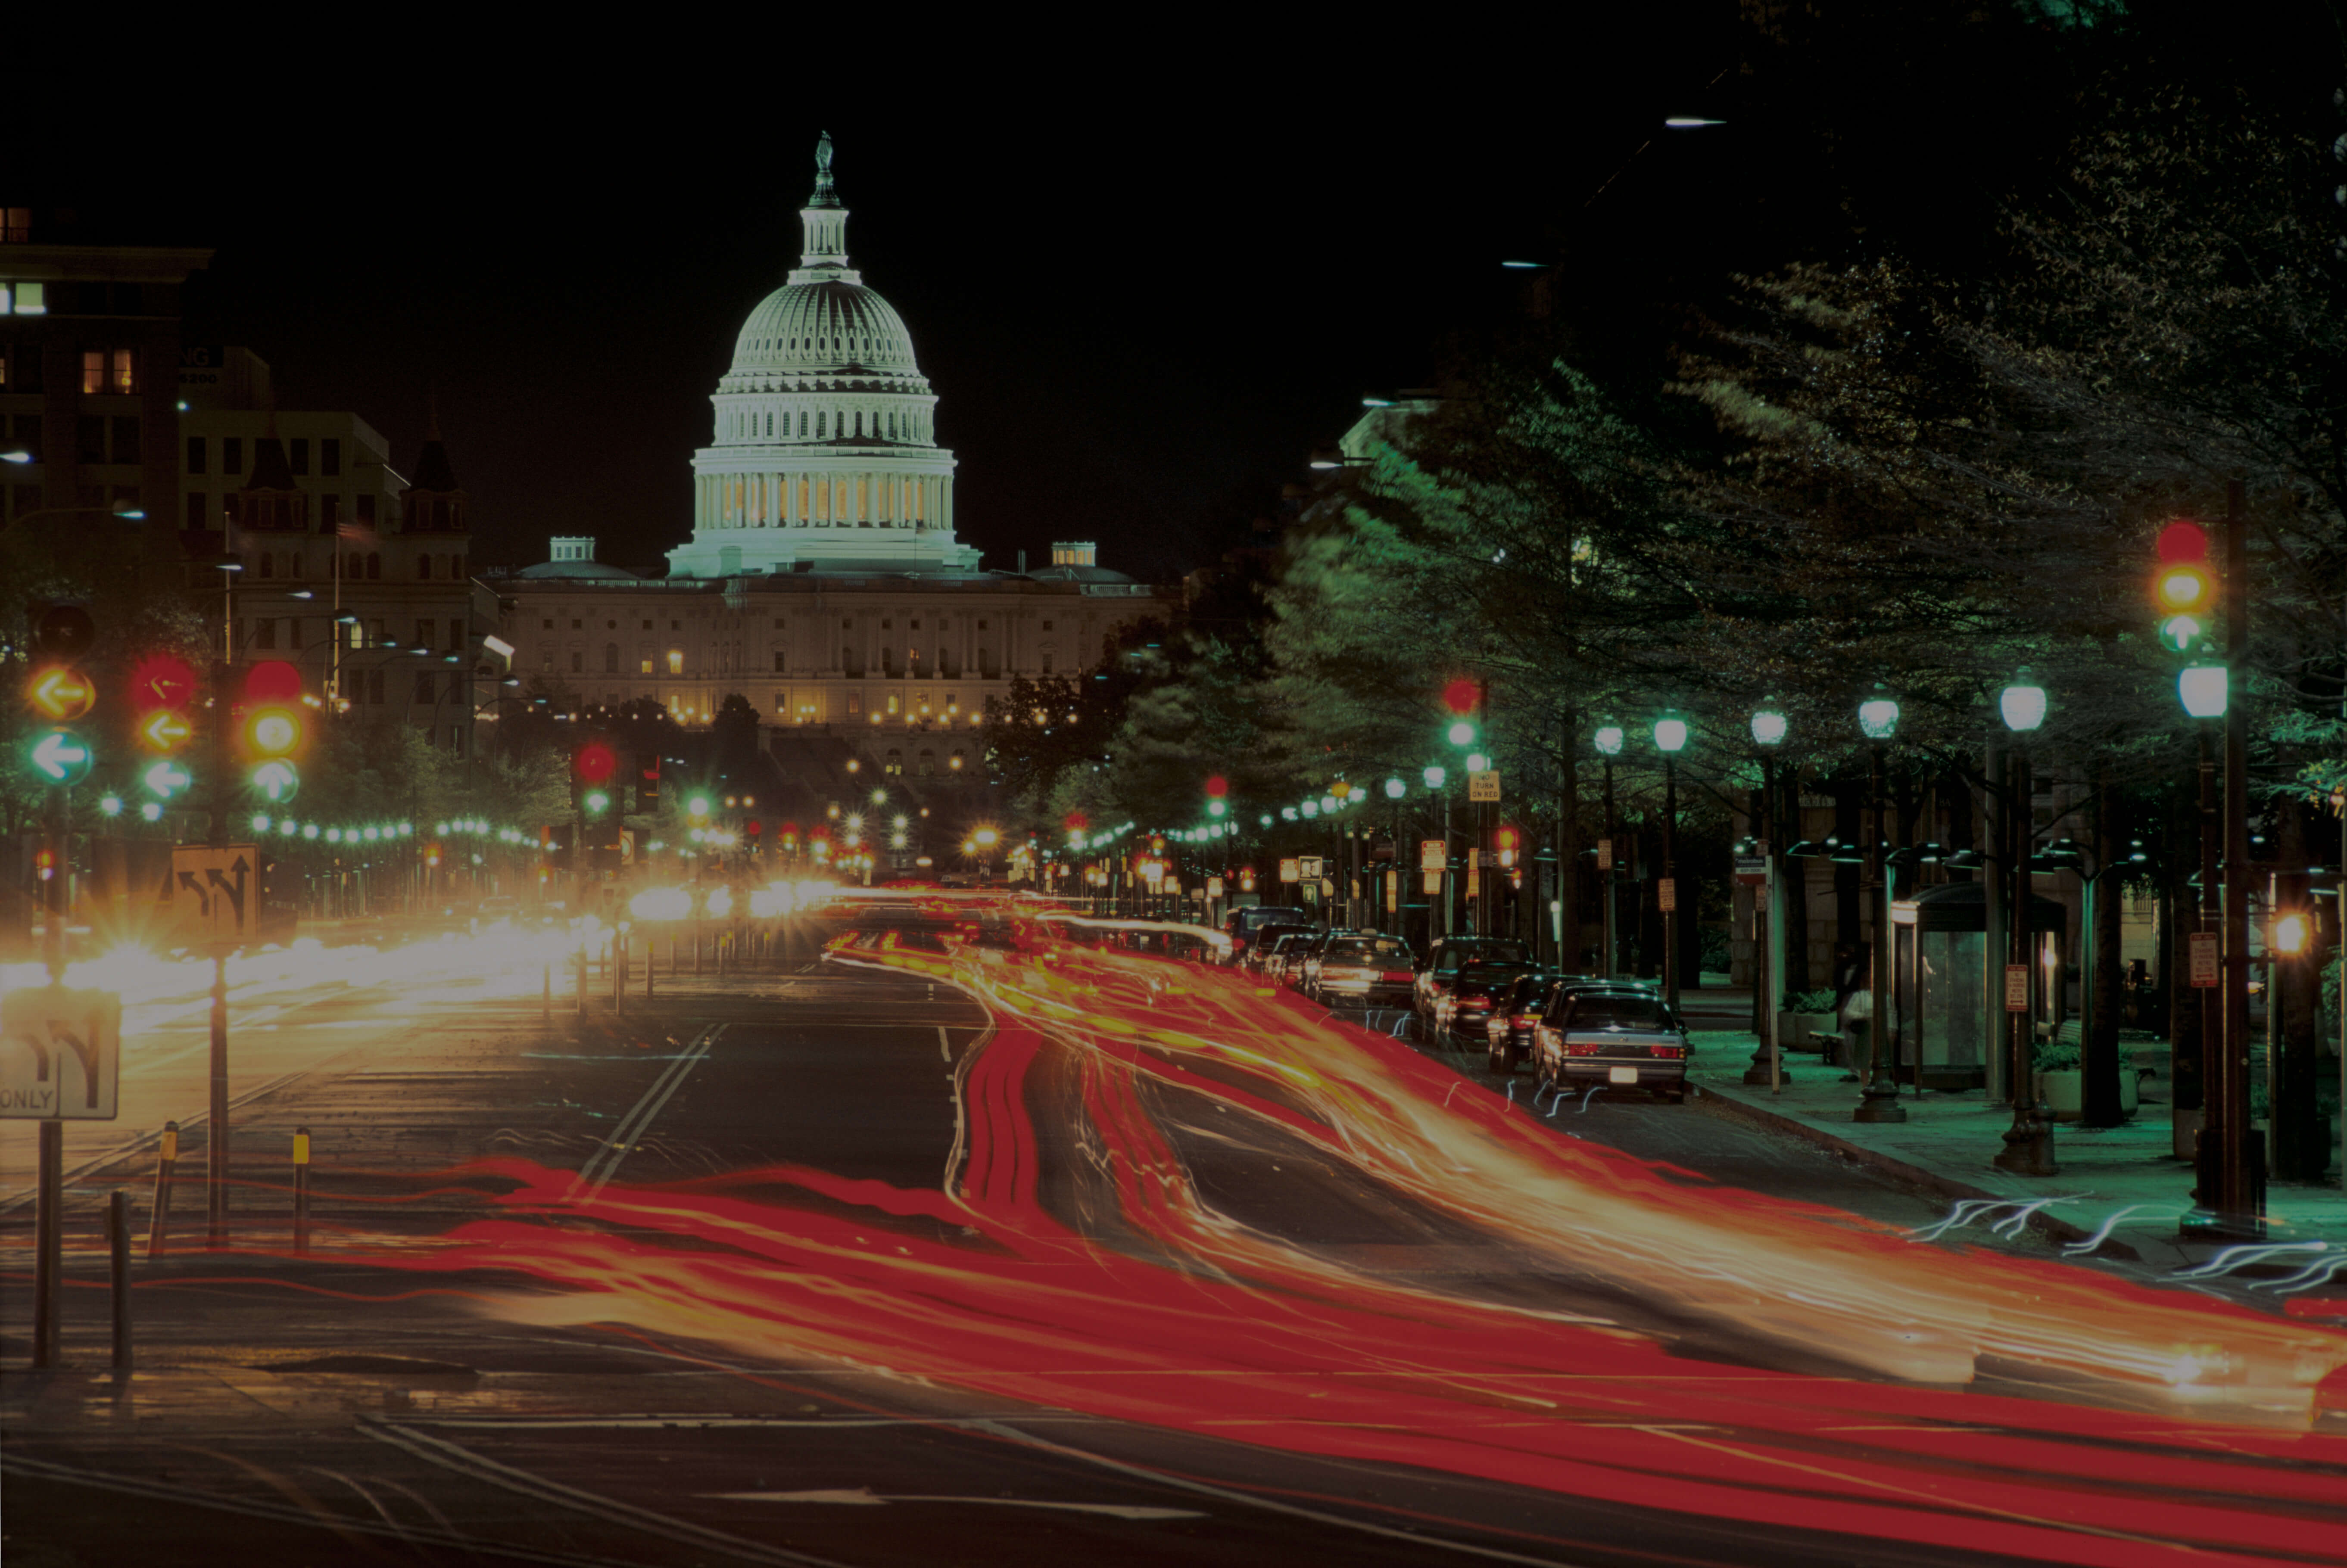 Washington at night